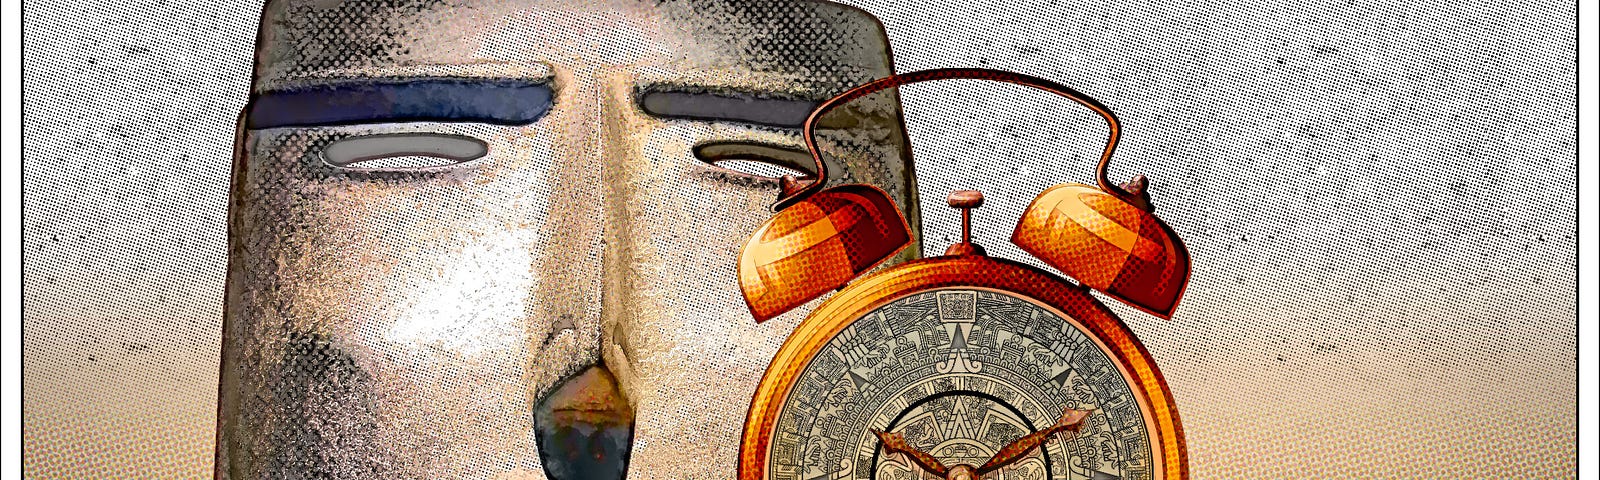 Alarm clock with Mayan Calendar for face